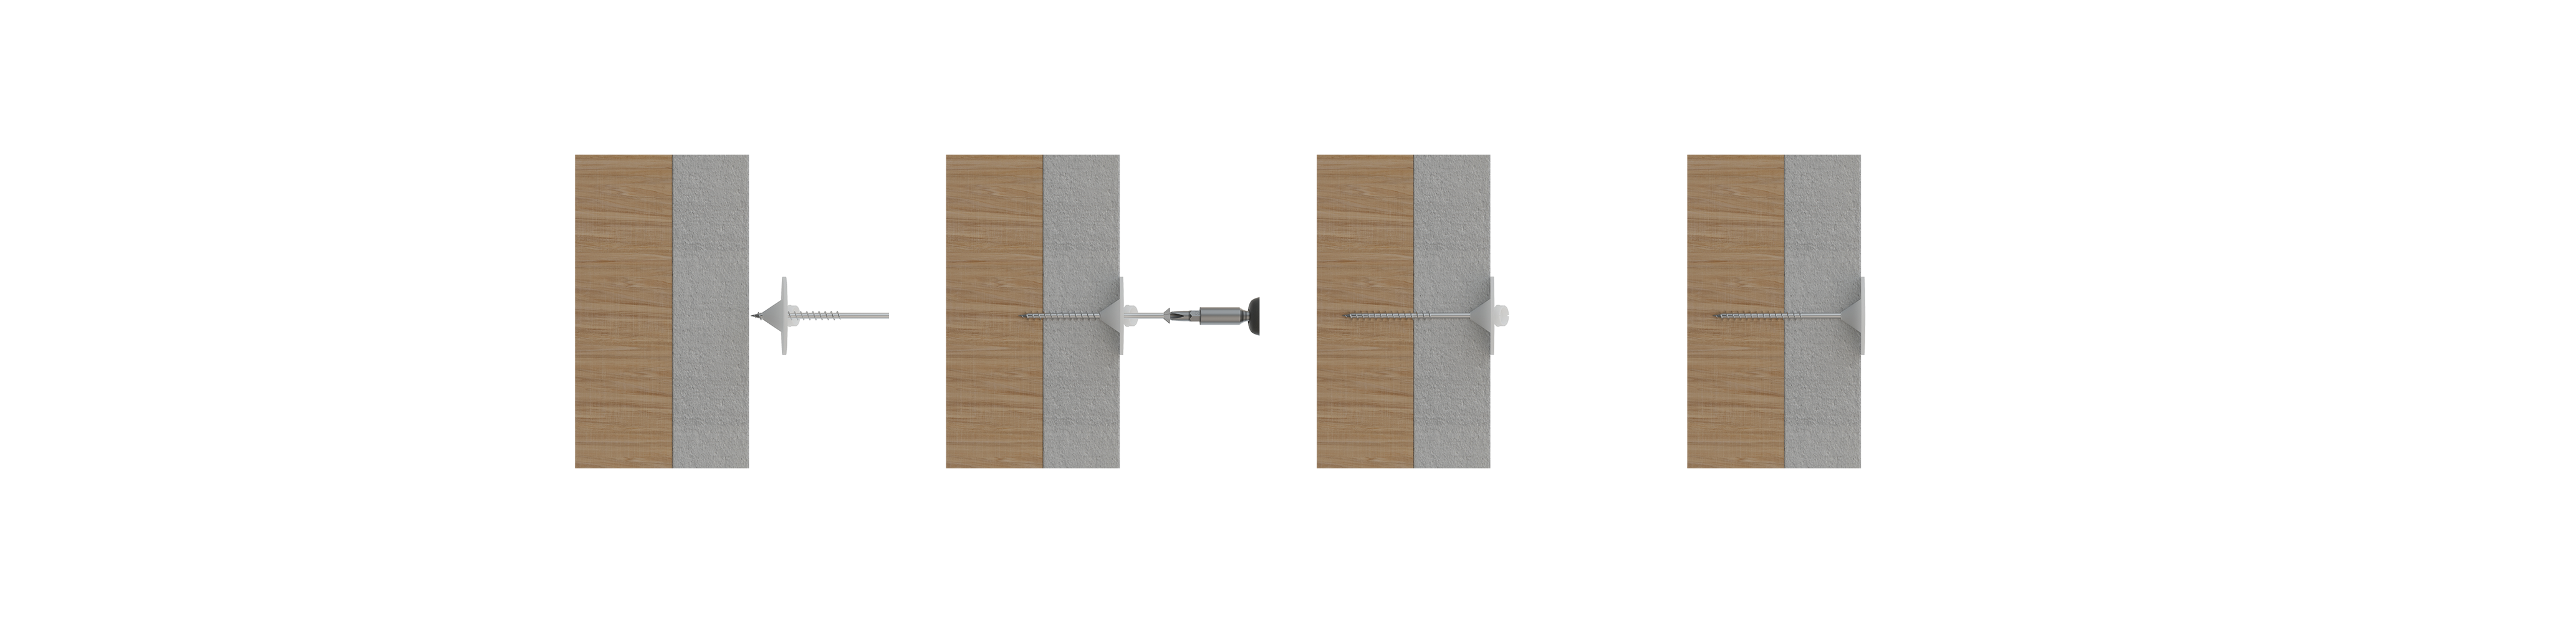 Instalación - AIS-W - Taco de fijación de paneles aislantes. Rosetón para uso con tornillo. 